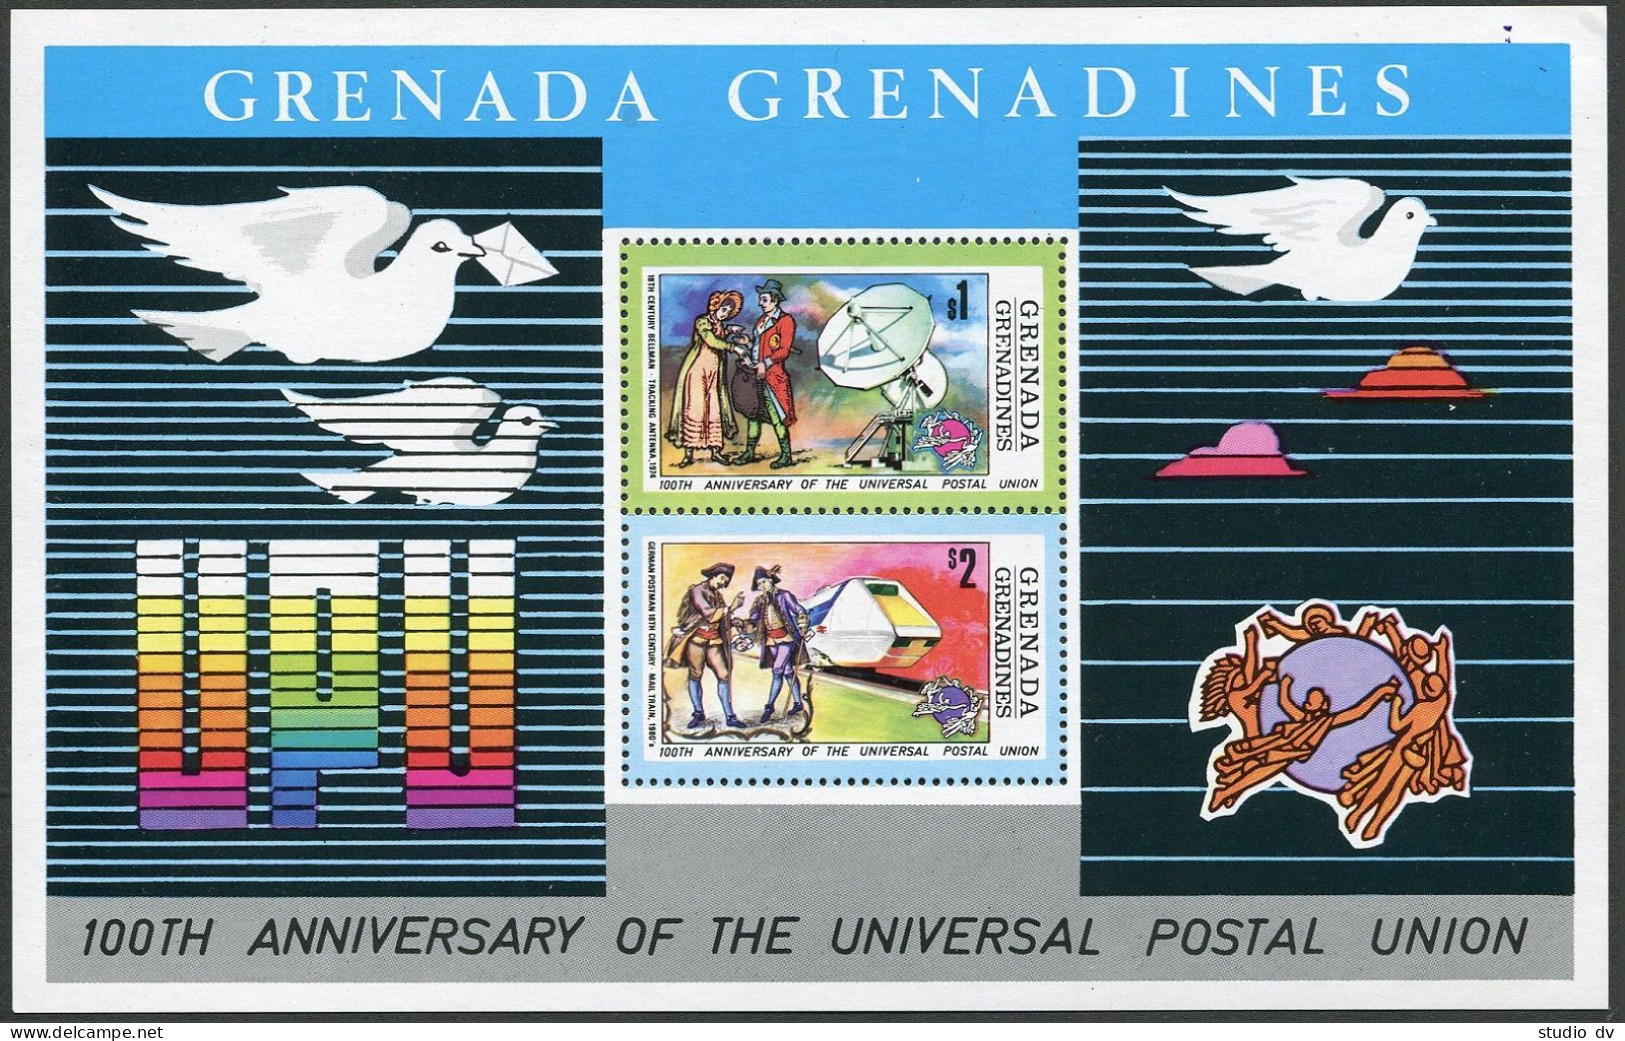 Grenada Gren 24-28,MNH.Michel 26-29,Bl.3. UPU-100,1974.Ship,Concorde,Zeppelin. - Grenada (1974-...)